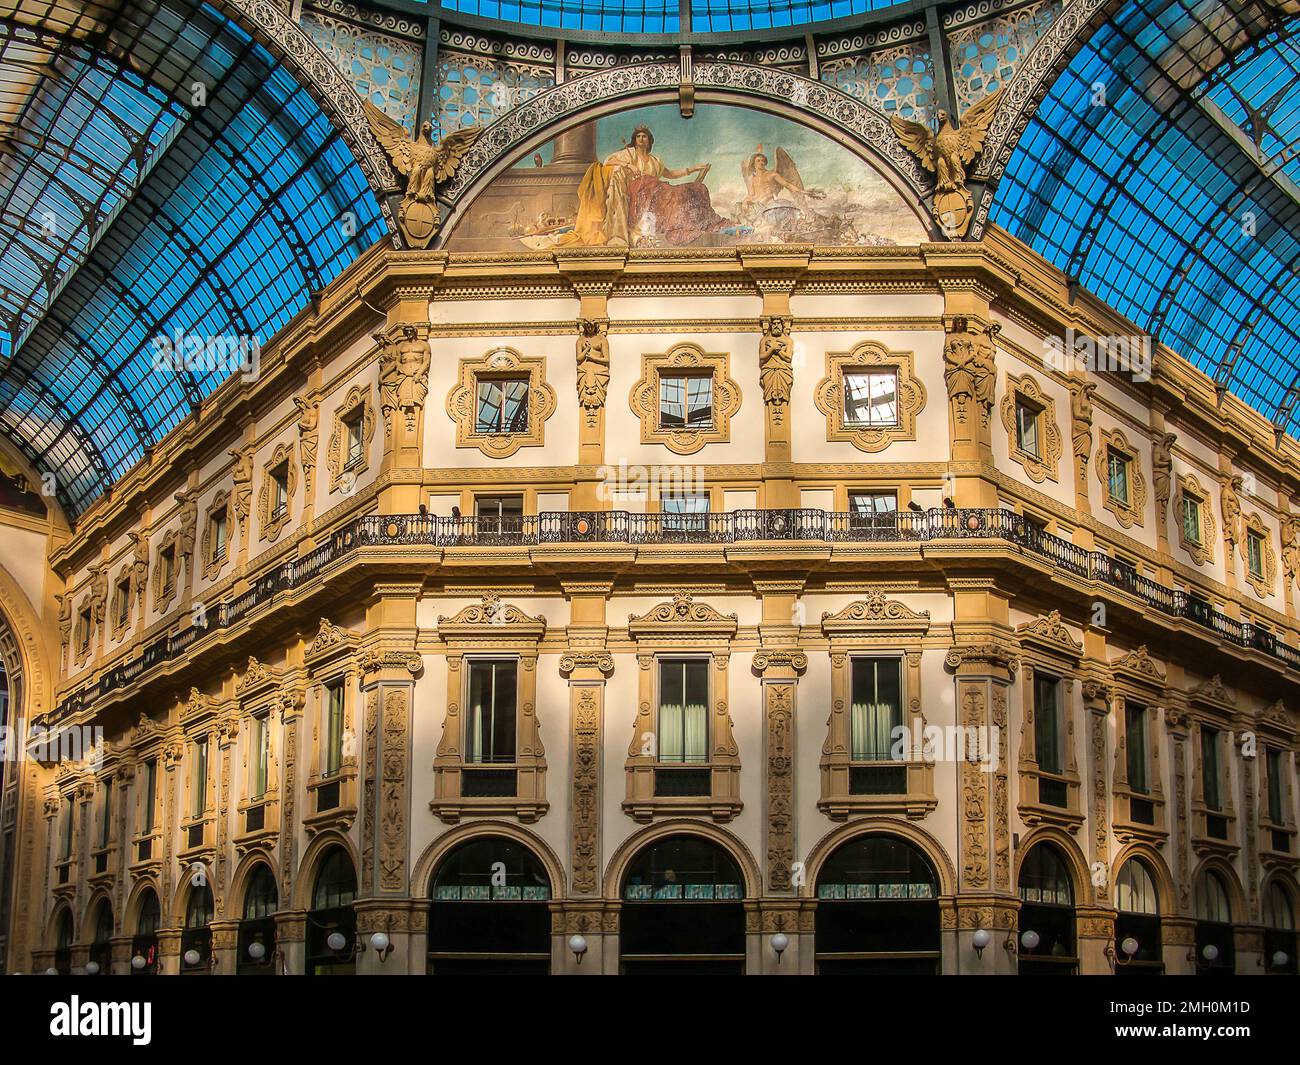 Peintures murales, murs, toit voûté en verre et ciel bleu de la galerie Vittorio Emanuele II, Milan, Lombardie, Italie Banque D'Images